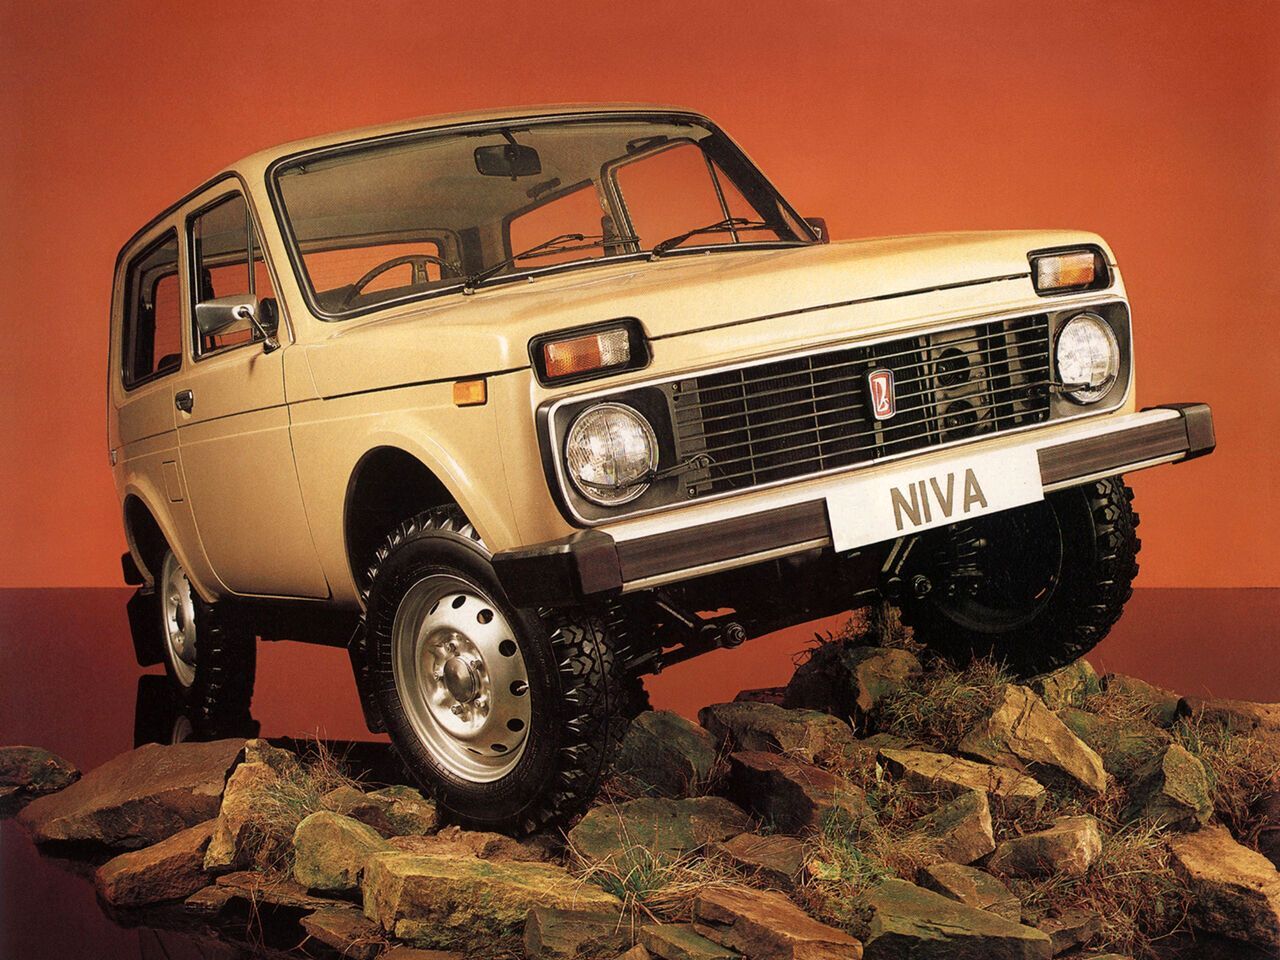 ВАЗ-21212 (Lada Niva 4x4) – експортна праворульная модифікація. Була зроблена обмежена партія, перш за все, для англійського ринку. Також поставлялася в Австралію, Нову Зеландію, Мозамбік та Ямайку